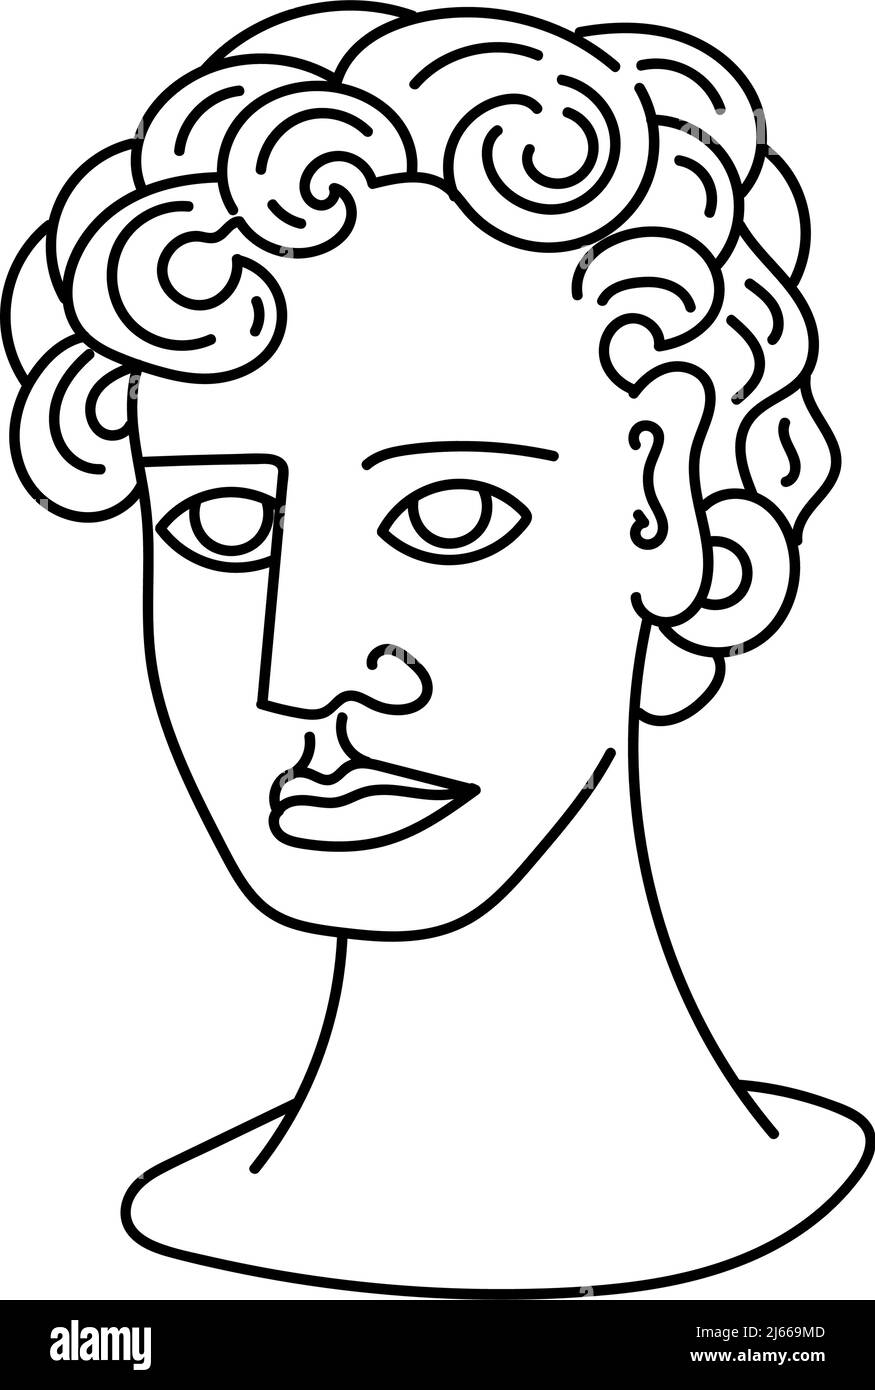 Kopf einer griechischen Statue, handgezeichneter Sketch-Stil Doodle. Griechenland. Uralte Statuen. Götter. Vektor einfache Illustration Stock Vektor